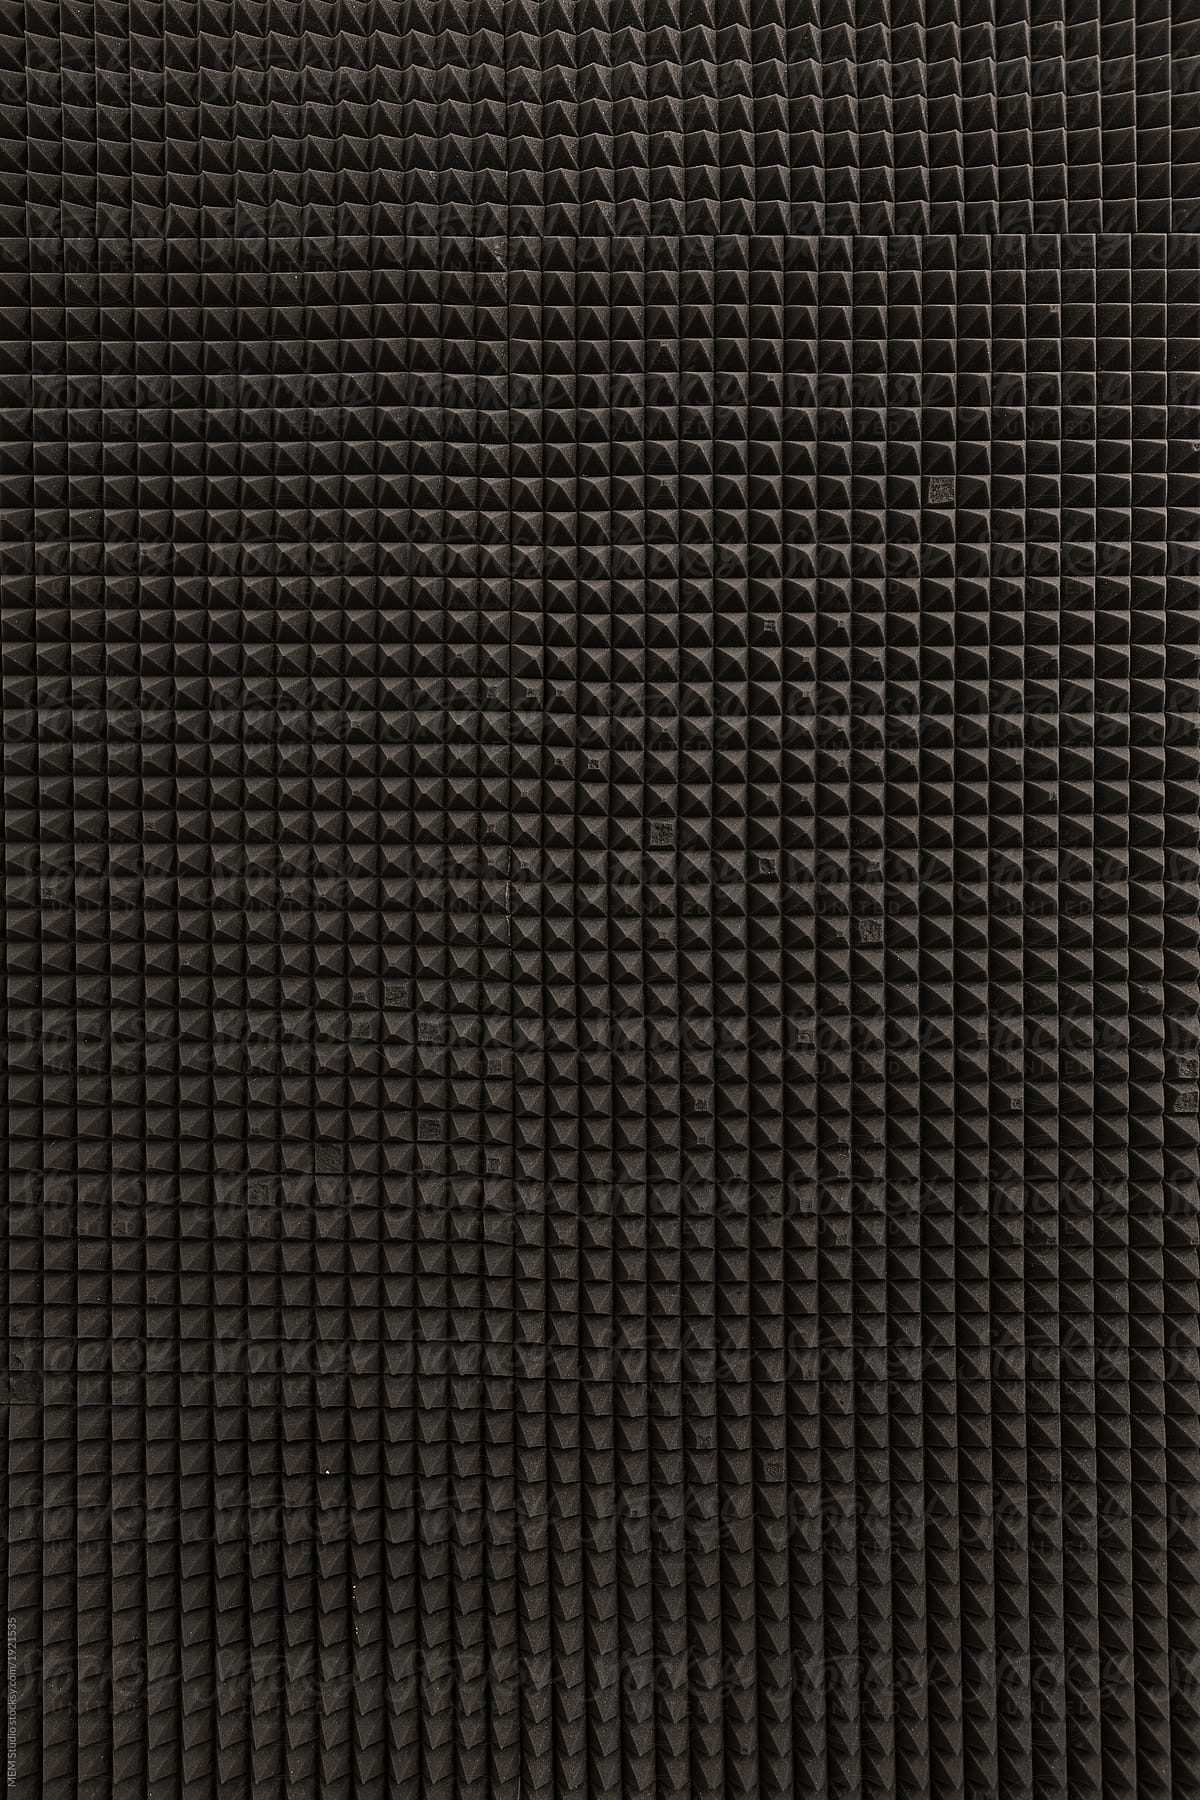 Sound proof foam pattern